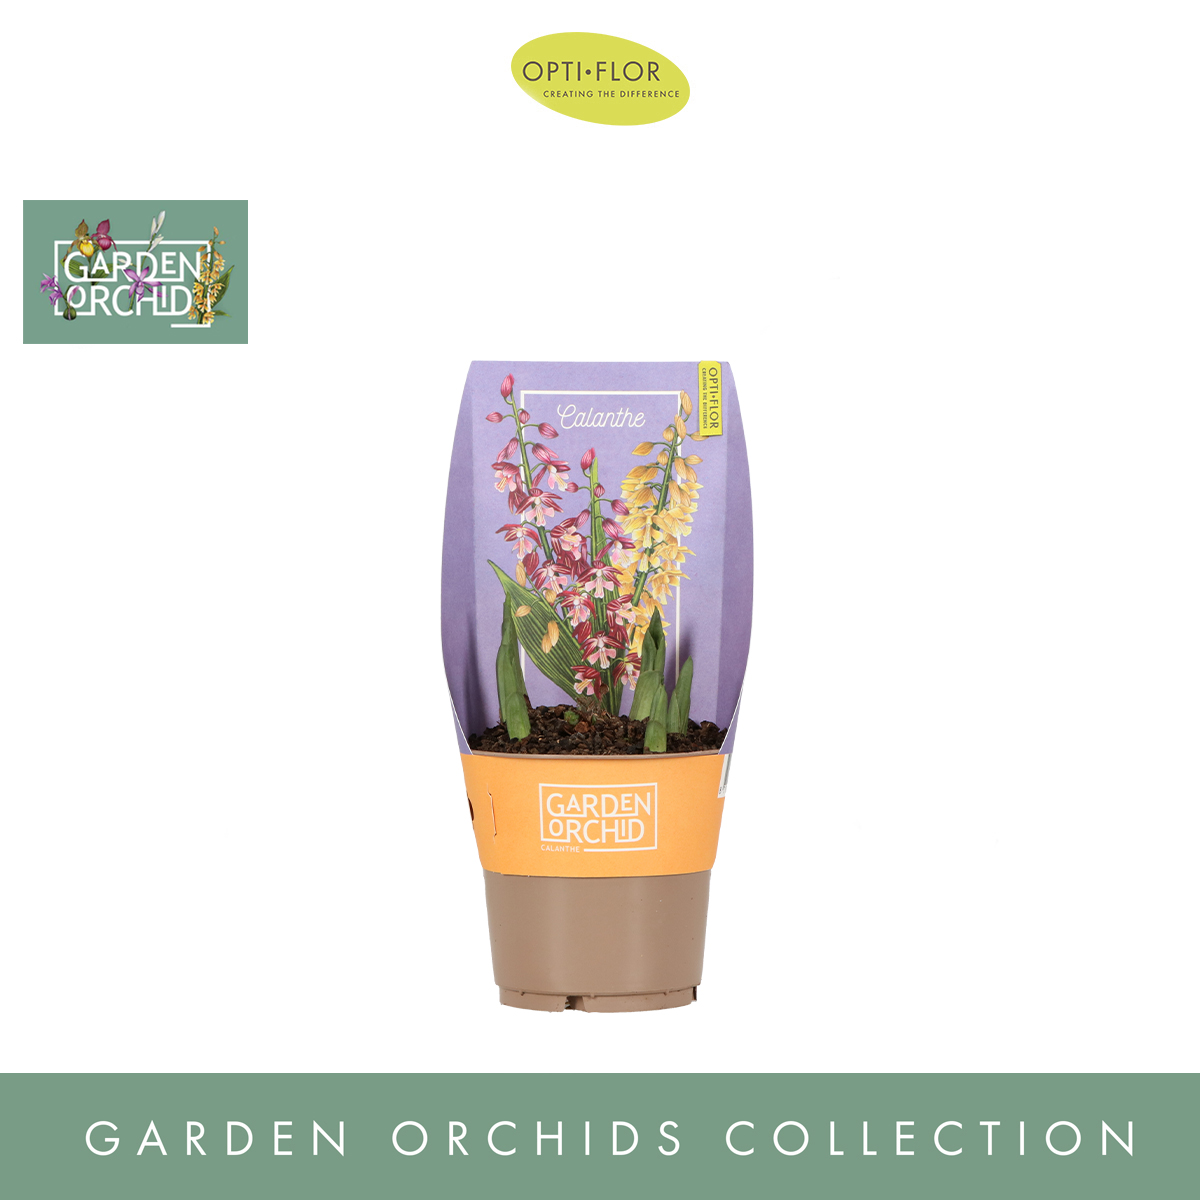 Calanthe Garden Orchids 6 Mix